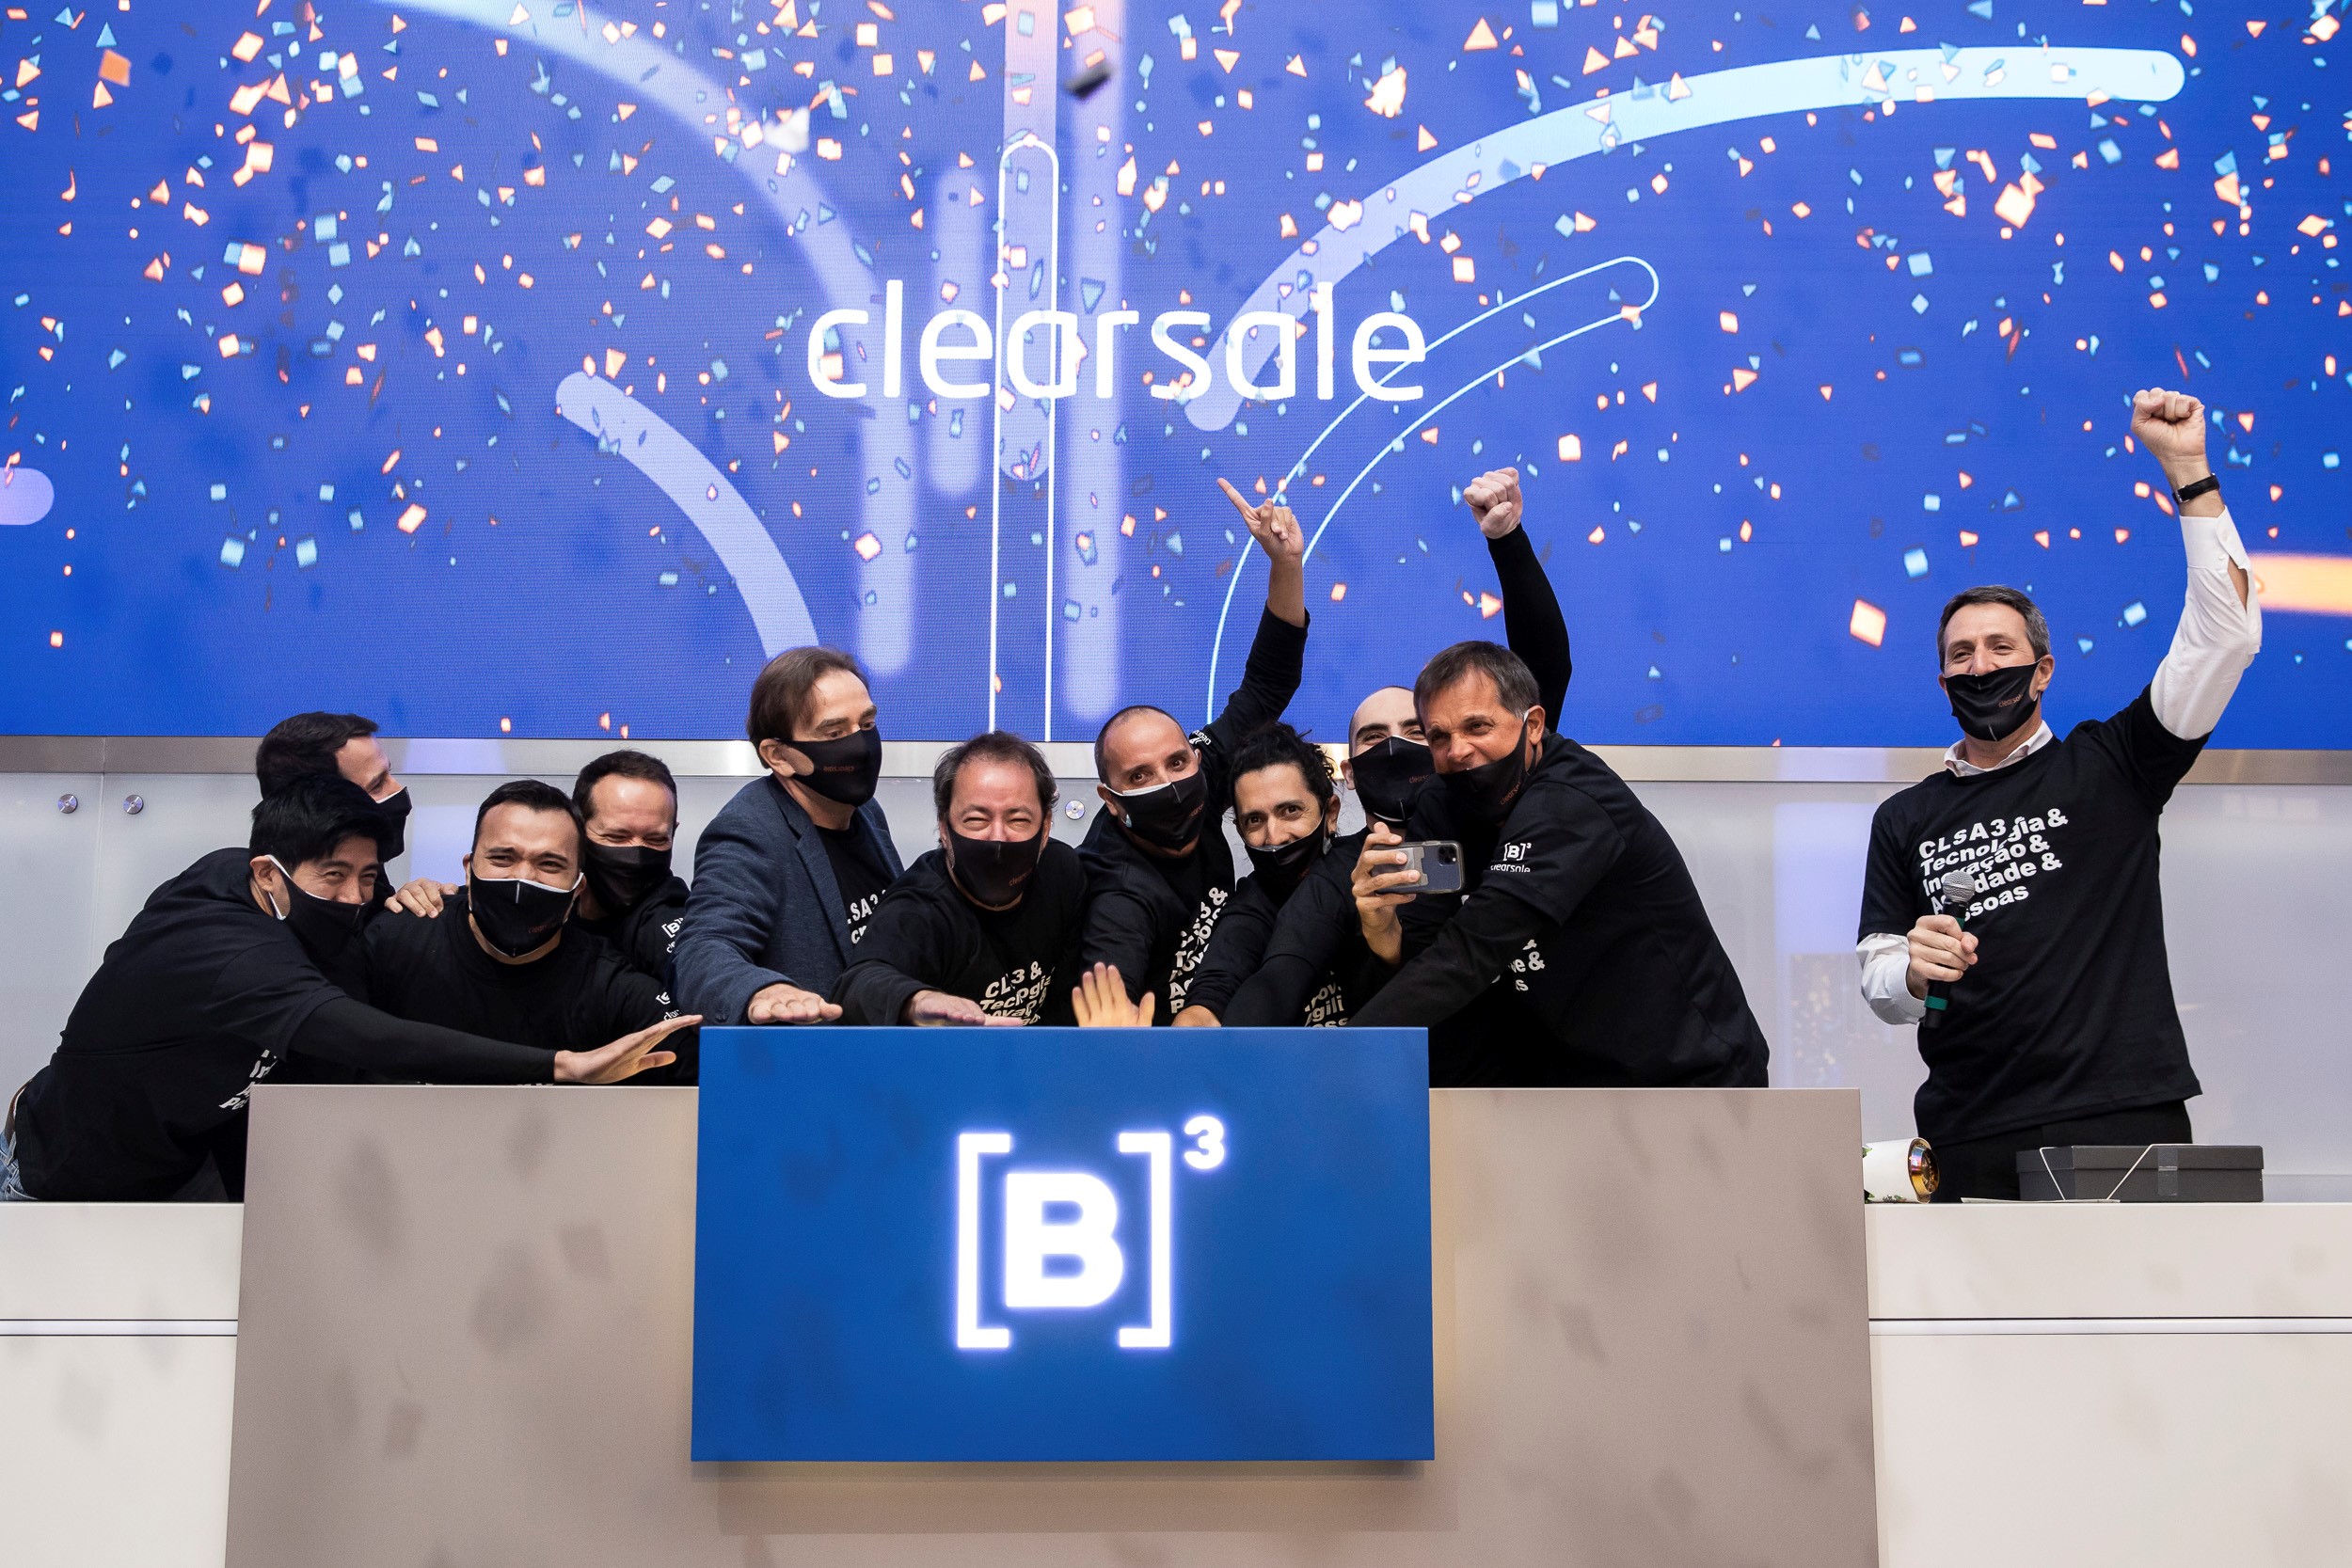 Grupo de homens vestindo camiseta preta com ticker da ClearSale sorriem por baixo das máscaras enquanto tocam campainha. Chuva de papel picado ao fundo marca entrada da ClearSale no mercado de capitais.